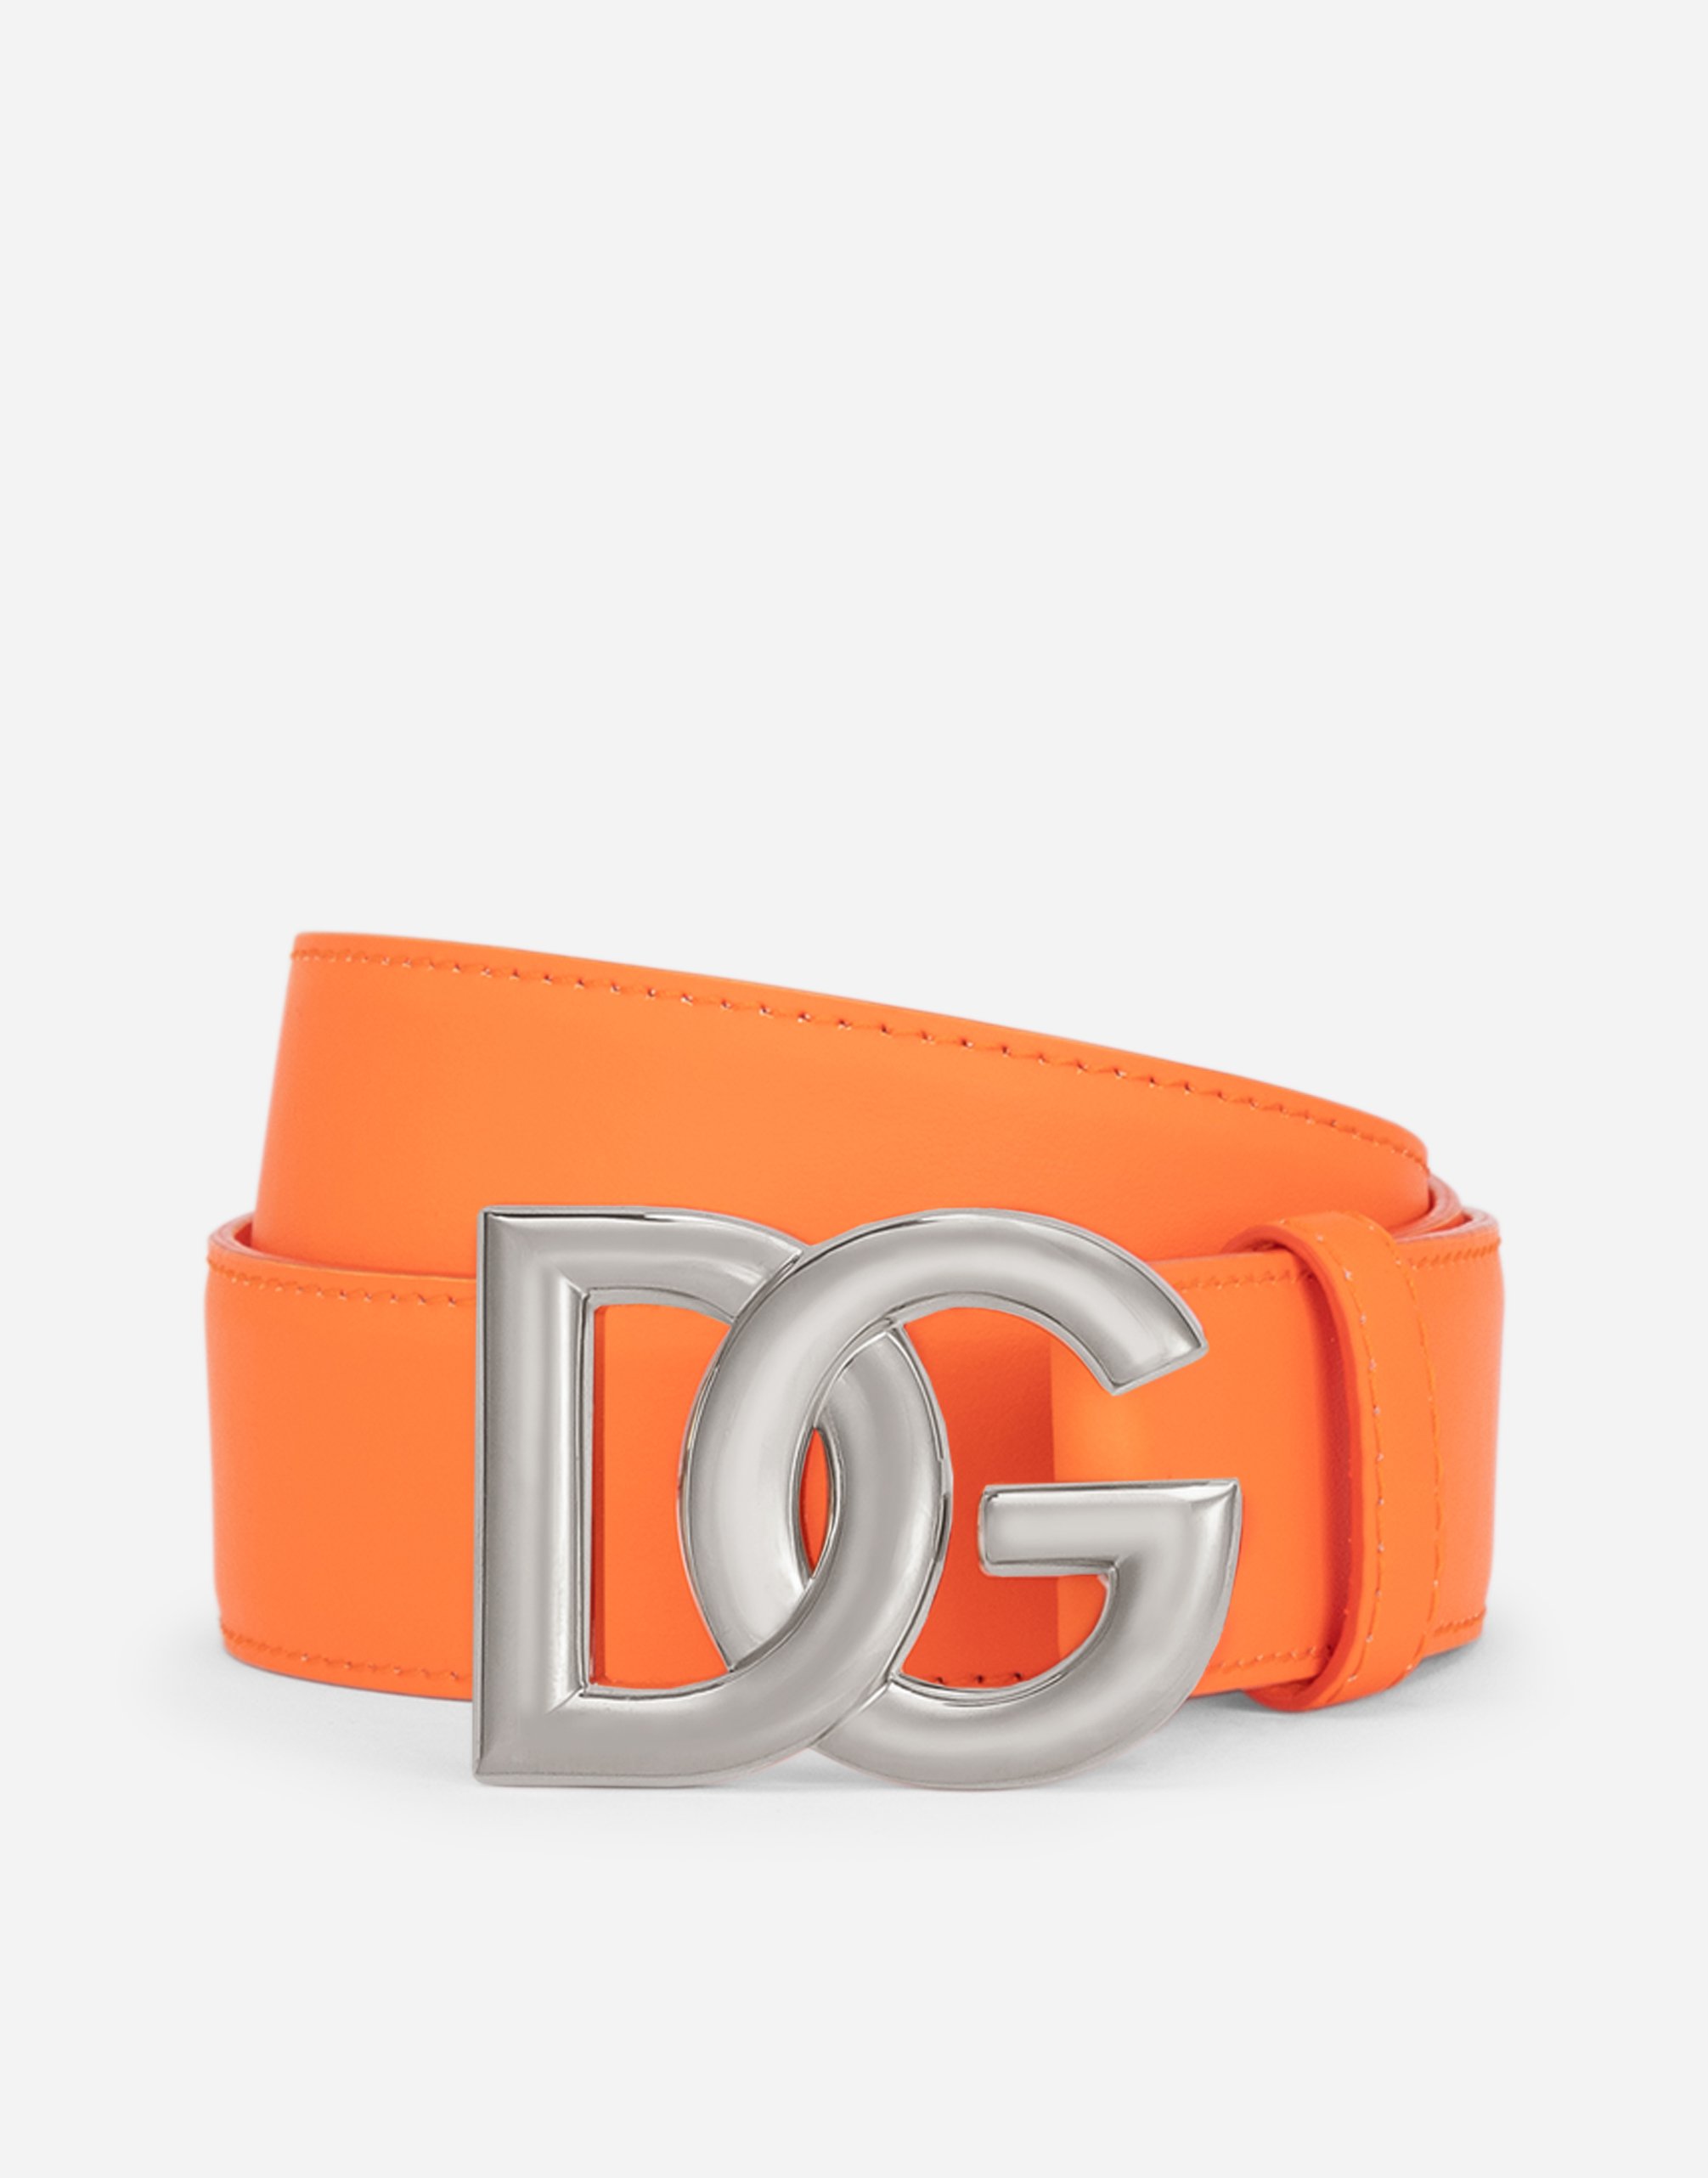 Calfskin belt with DG logo in Orange